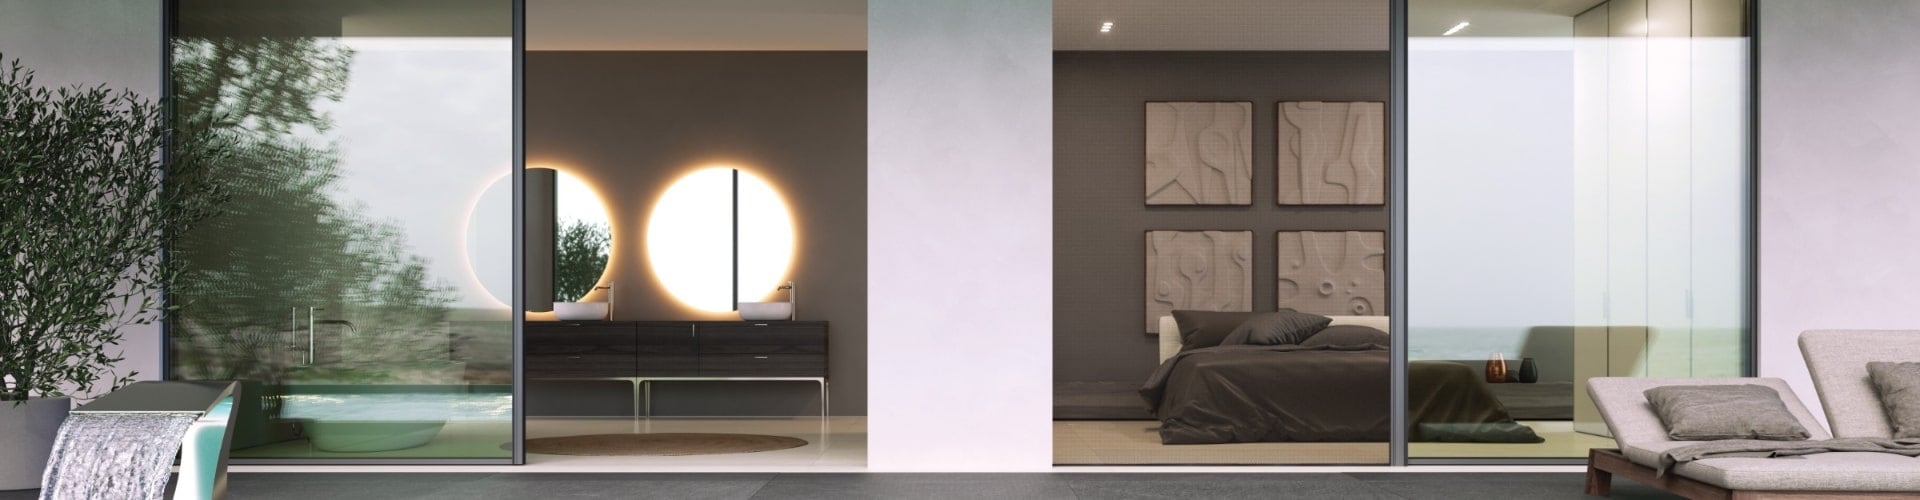 flyscreen interior design bedroom aluminium systems